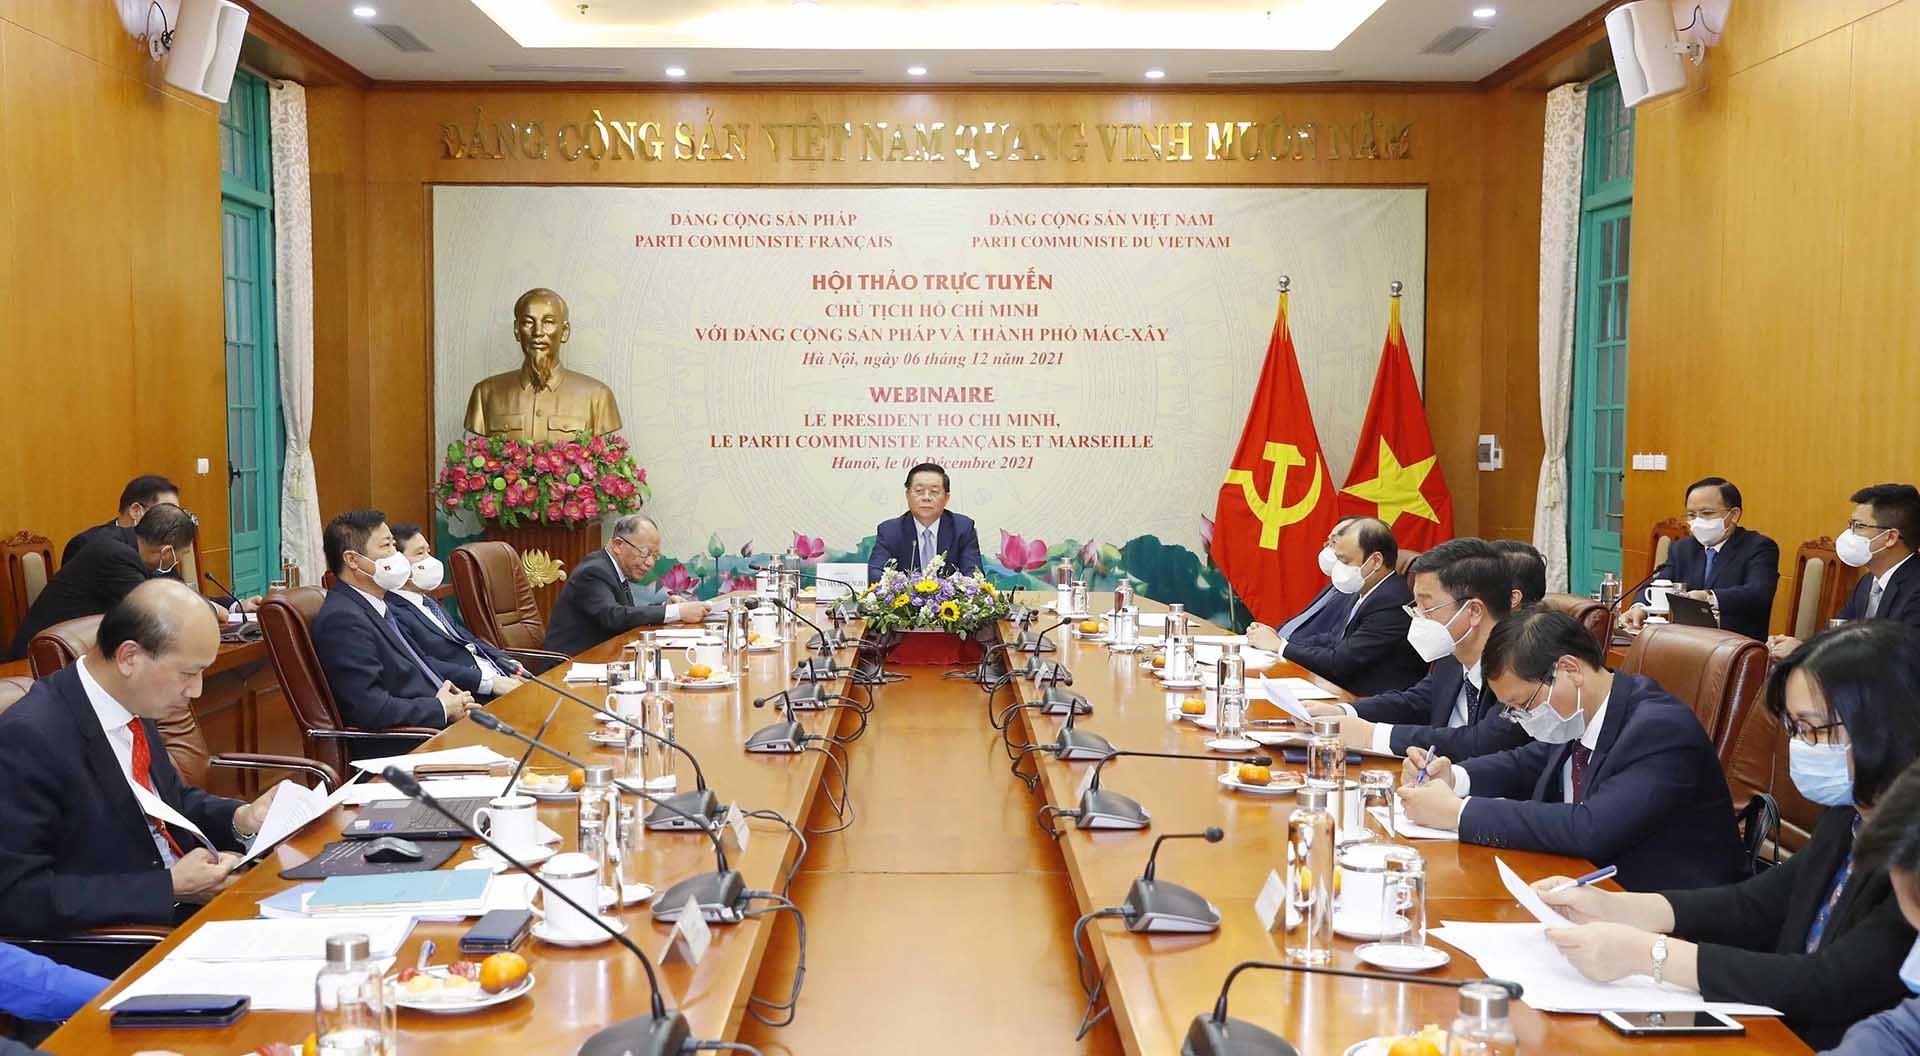 Đảng Cộng sản Việt Nam và Đảng Cộng sản Pháp đồng tổ chức Hội thảo trực tuyến về chủ đề Chủ tịch Hồ Chí Minh với Đảng Cộng sản Pháp và thành phố Marseille. (Nguồn: TTXVN)